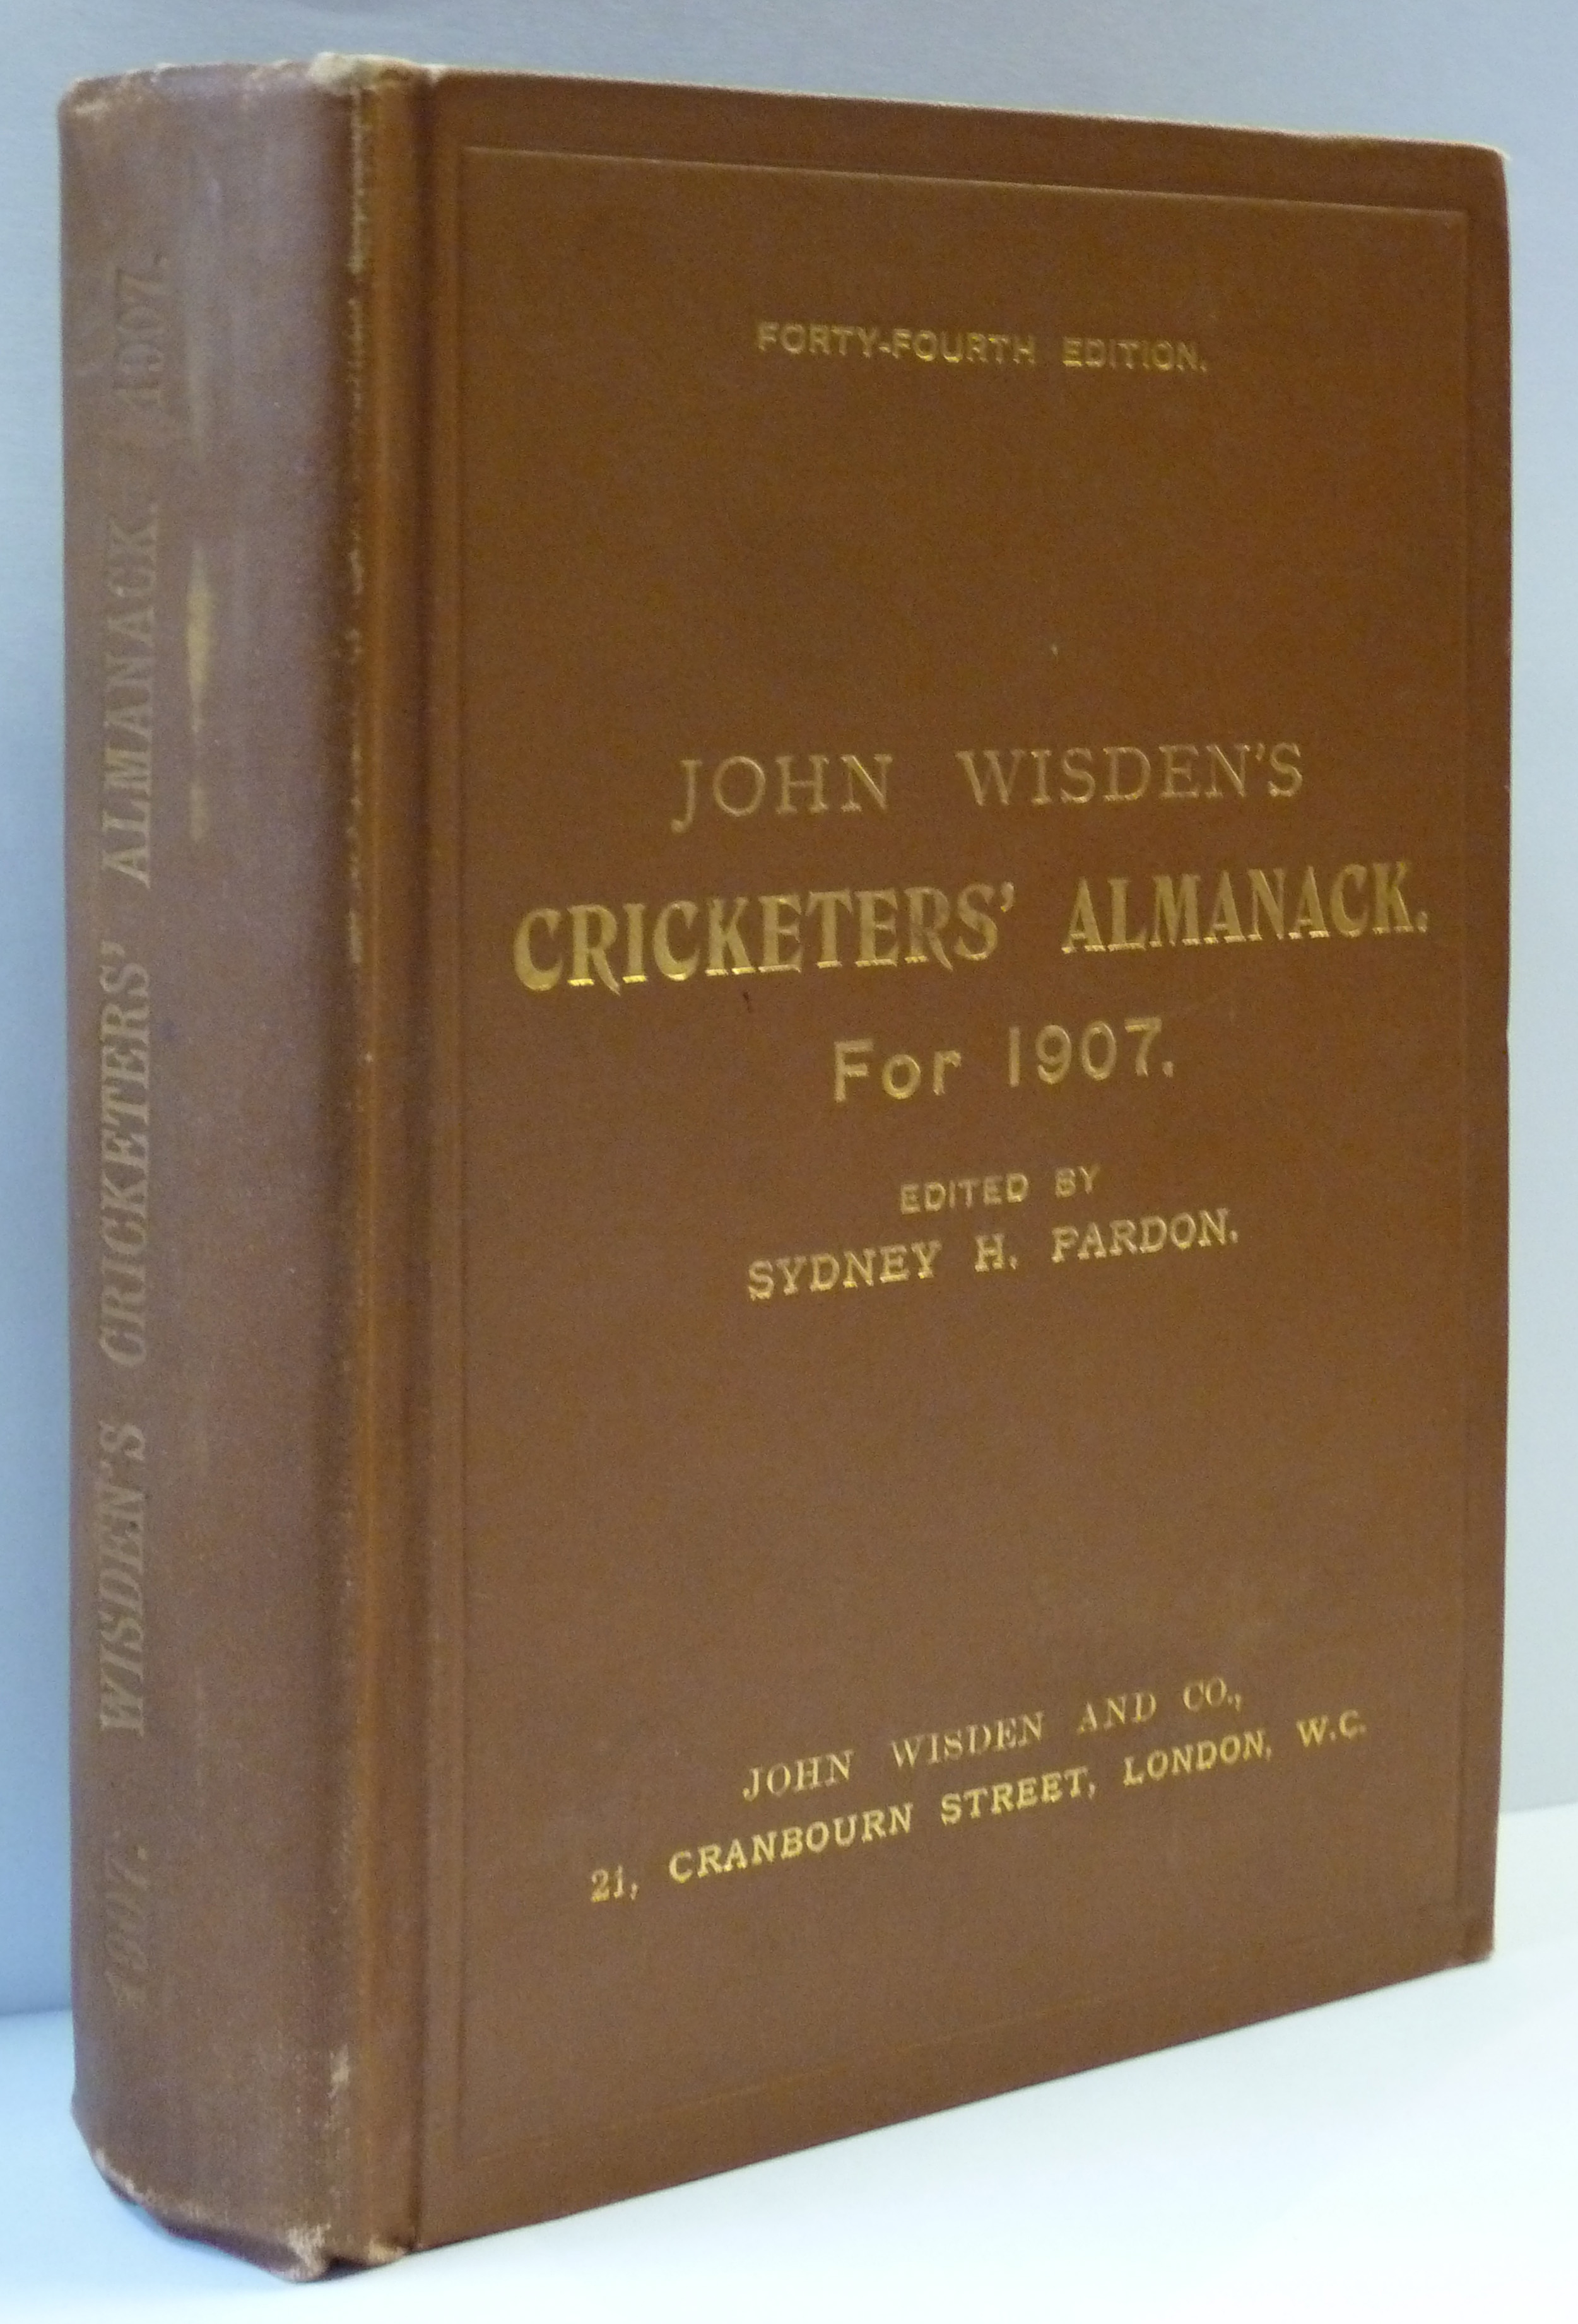 John Wisden's Cricketers' Almanack for 1907